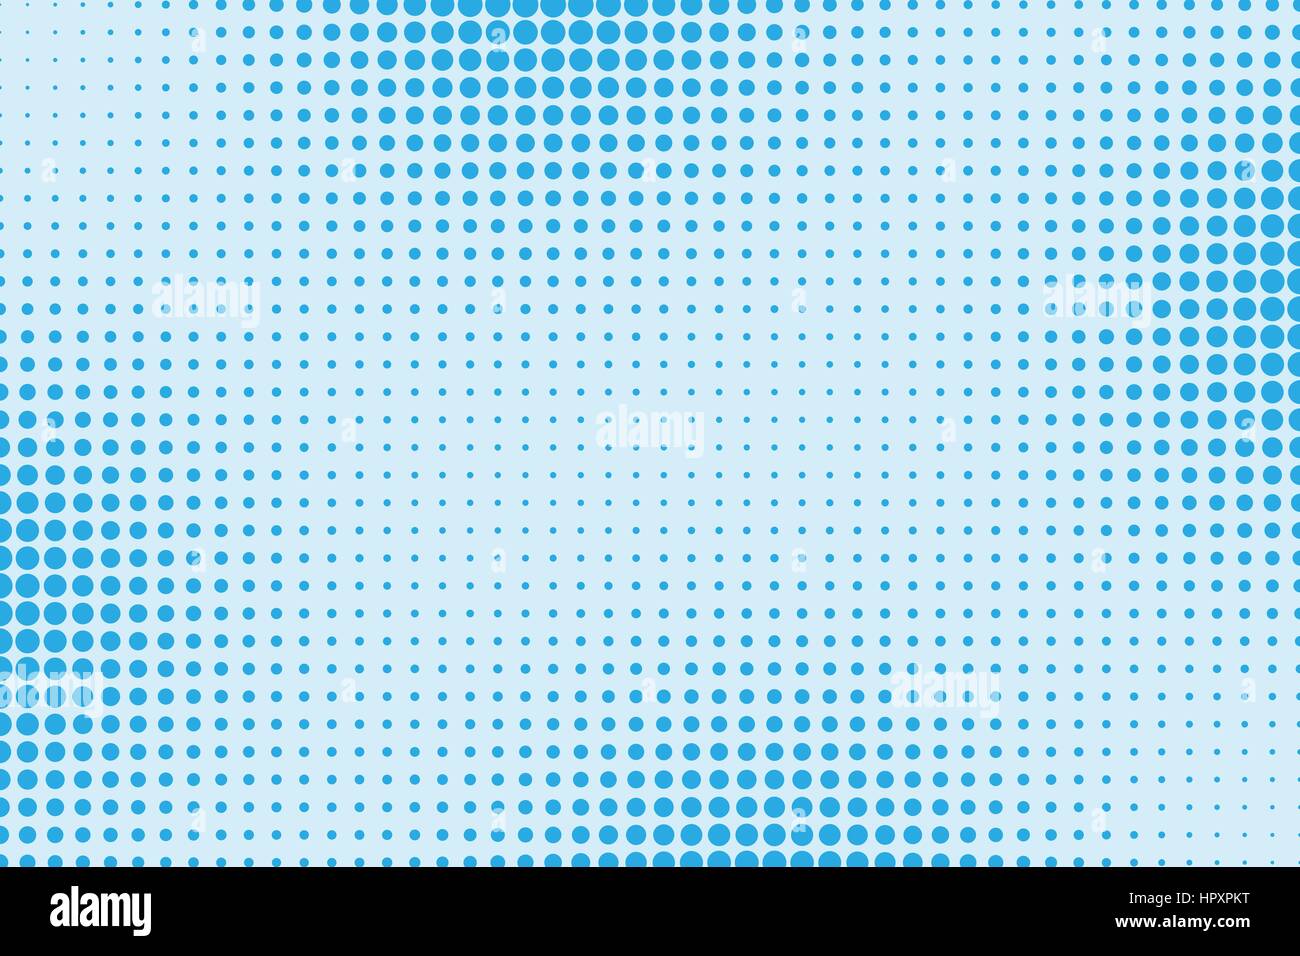 Halftone pattern puntiforme come sfondo. Fumetto pop art style punti blu texture vettoriali per il vostro design Illustrazione Vettoriale